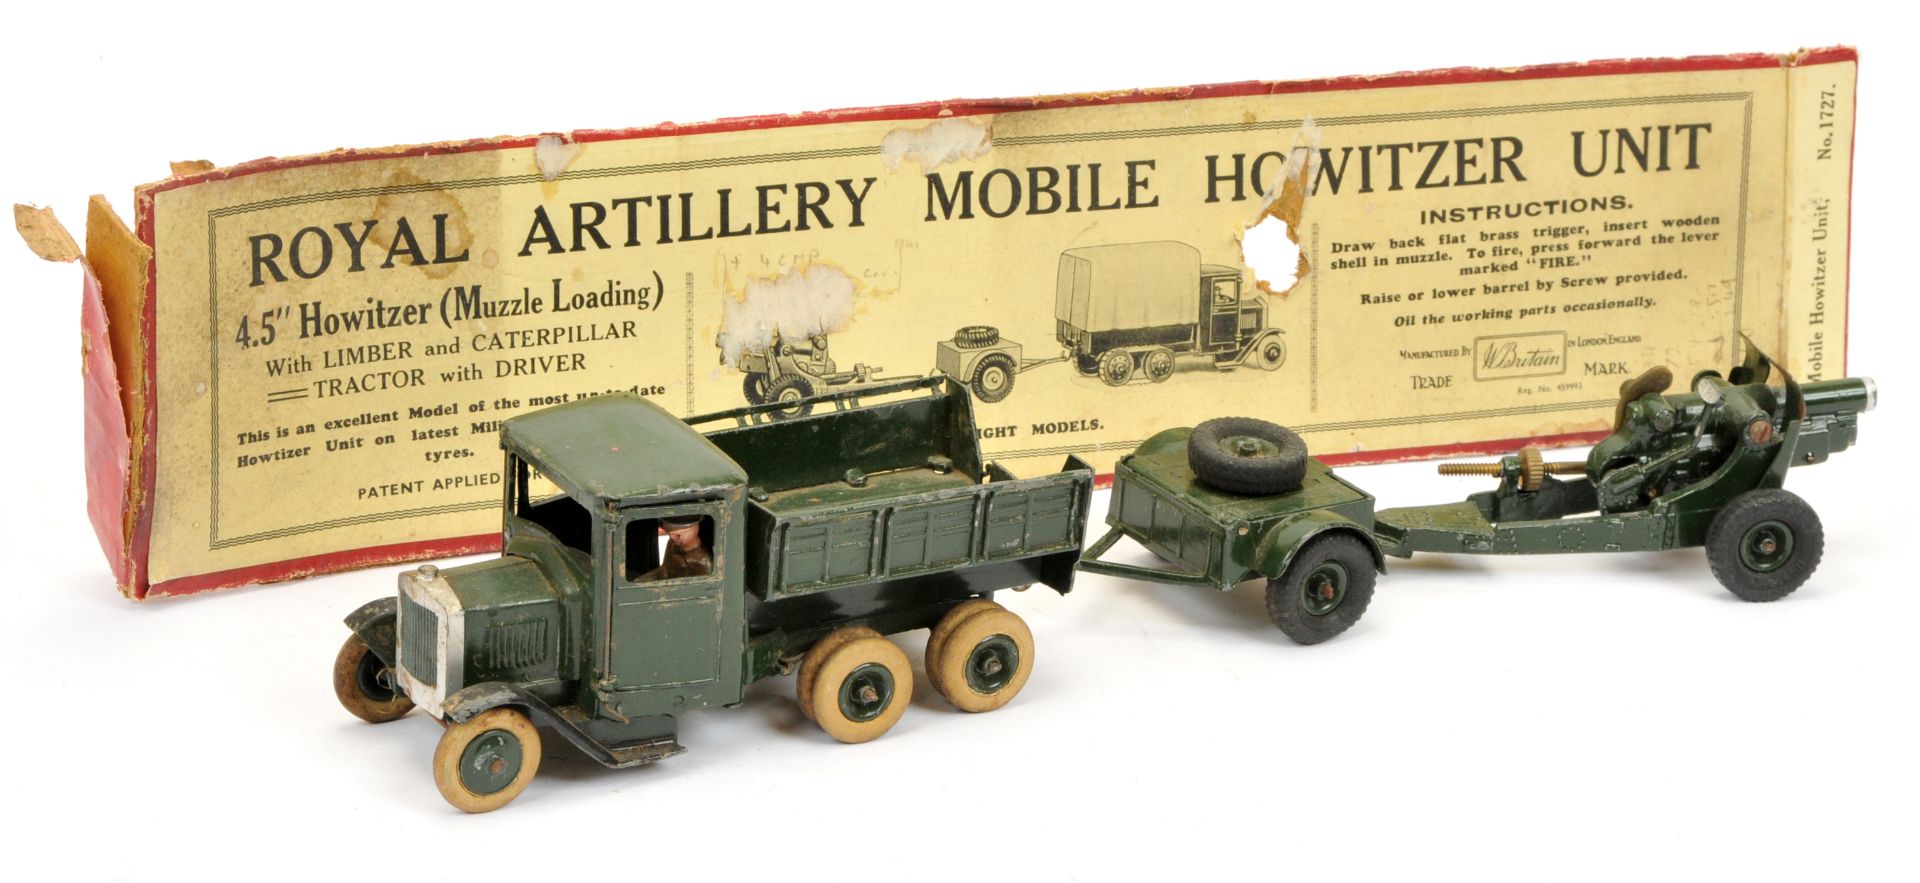 Britains - Set No. 1727 'Royal Artillery Mobile Howitzer Unit'